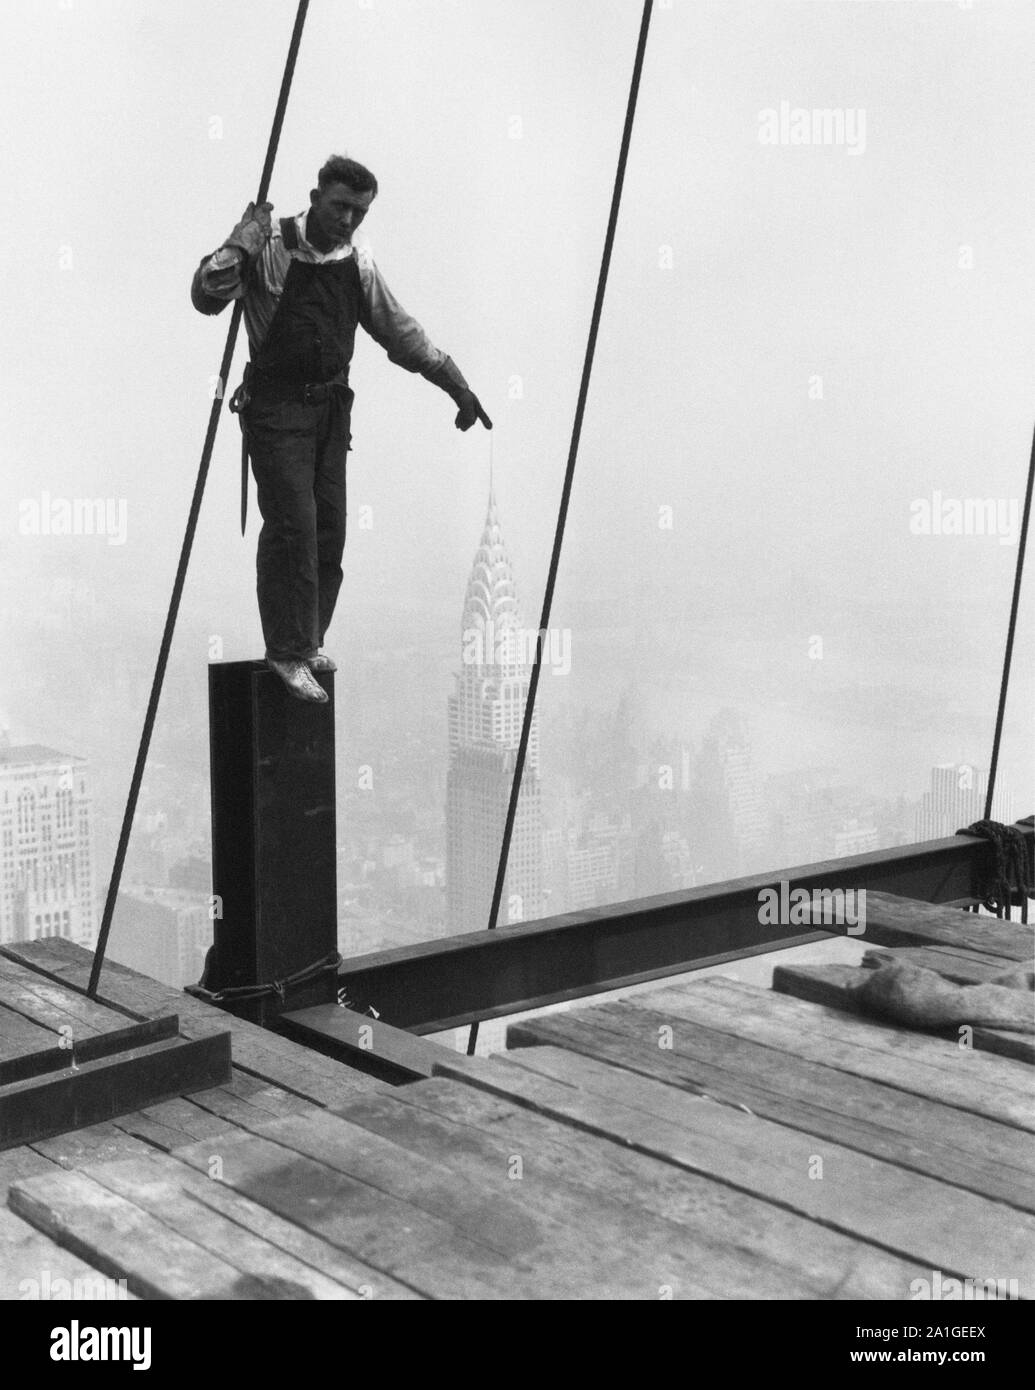 Lewis Hine métallurgiste debout sur un faisceau donne l'illusion de toucher la pointe du Chrysler Building Banque D'Images